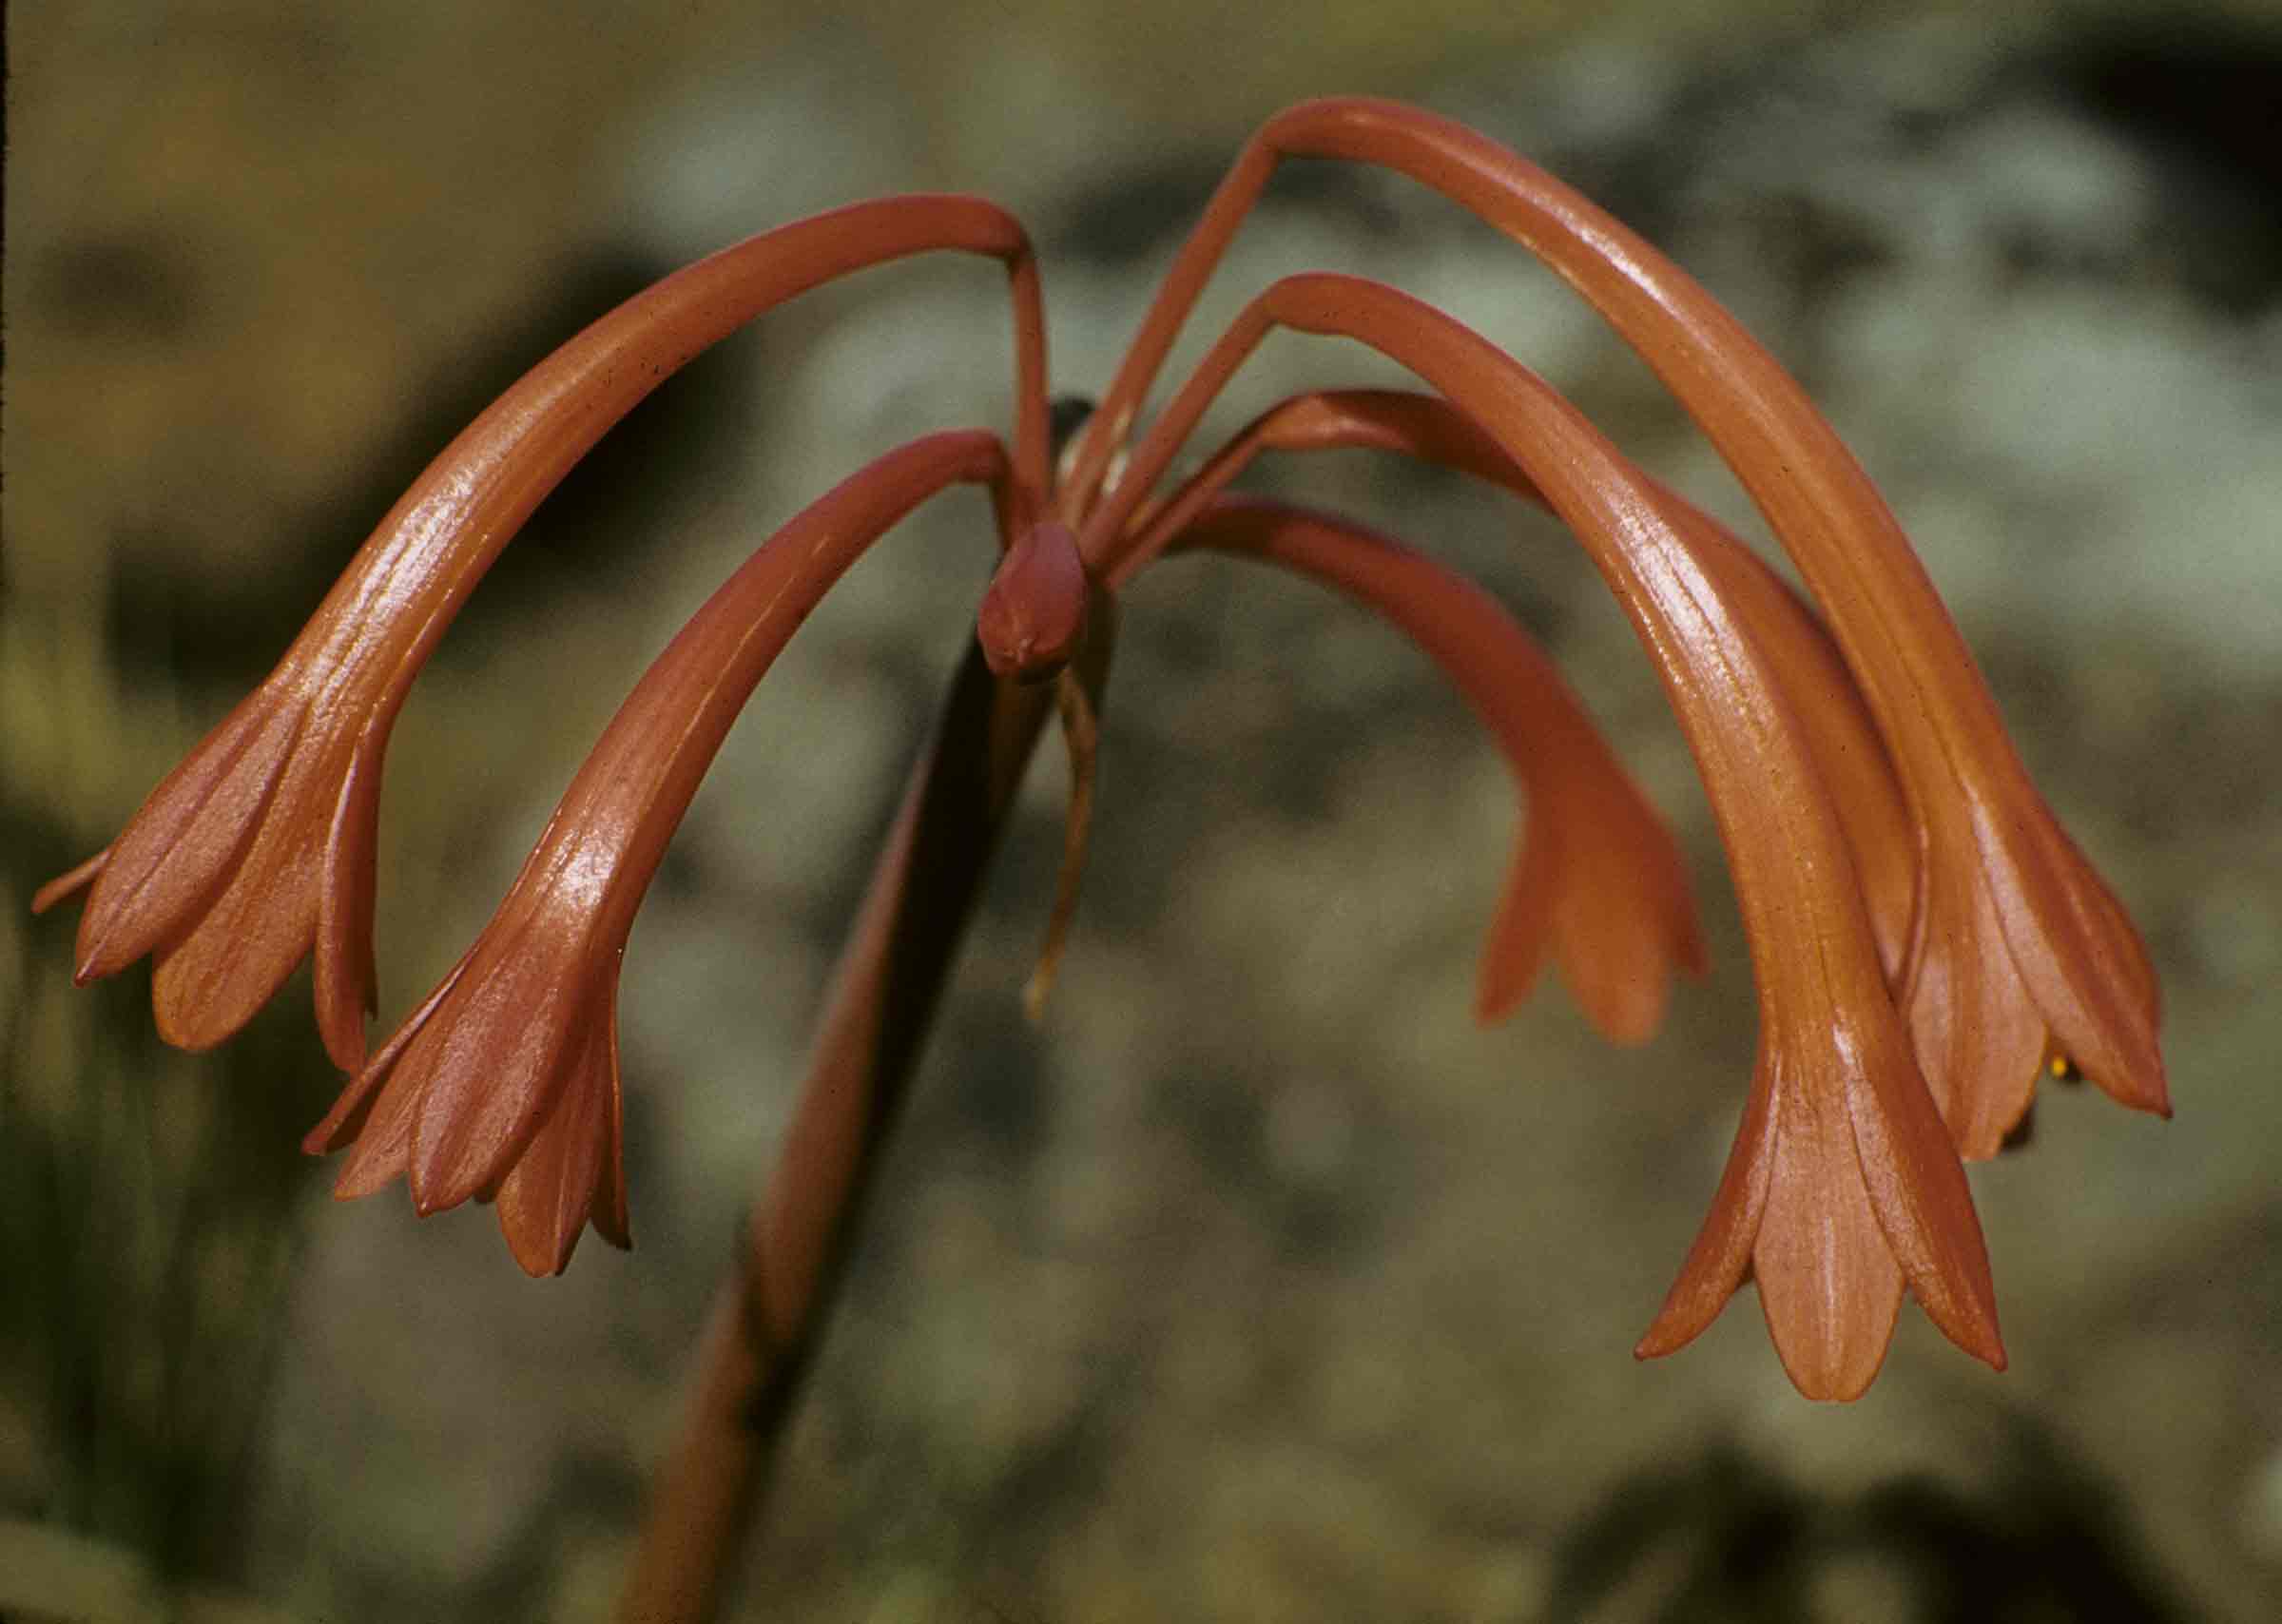 Cyrtanthus rhodesianus